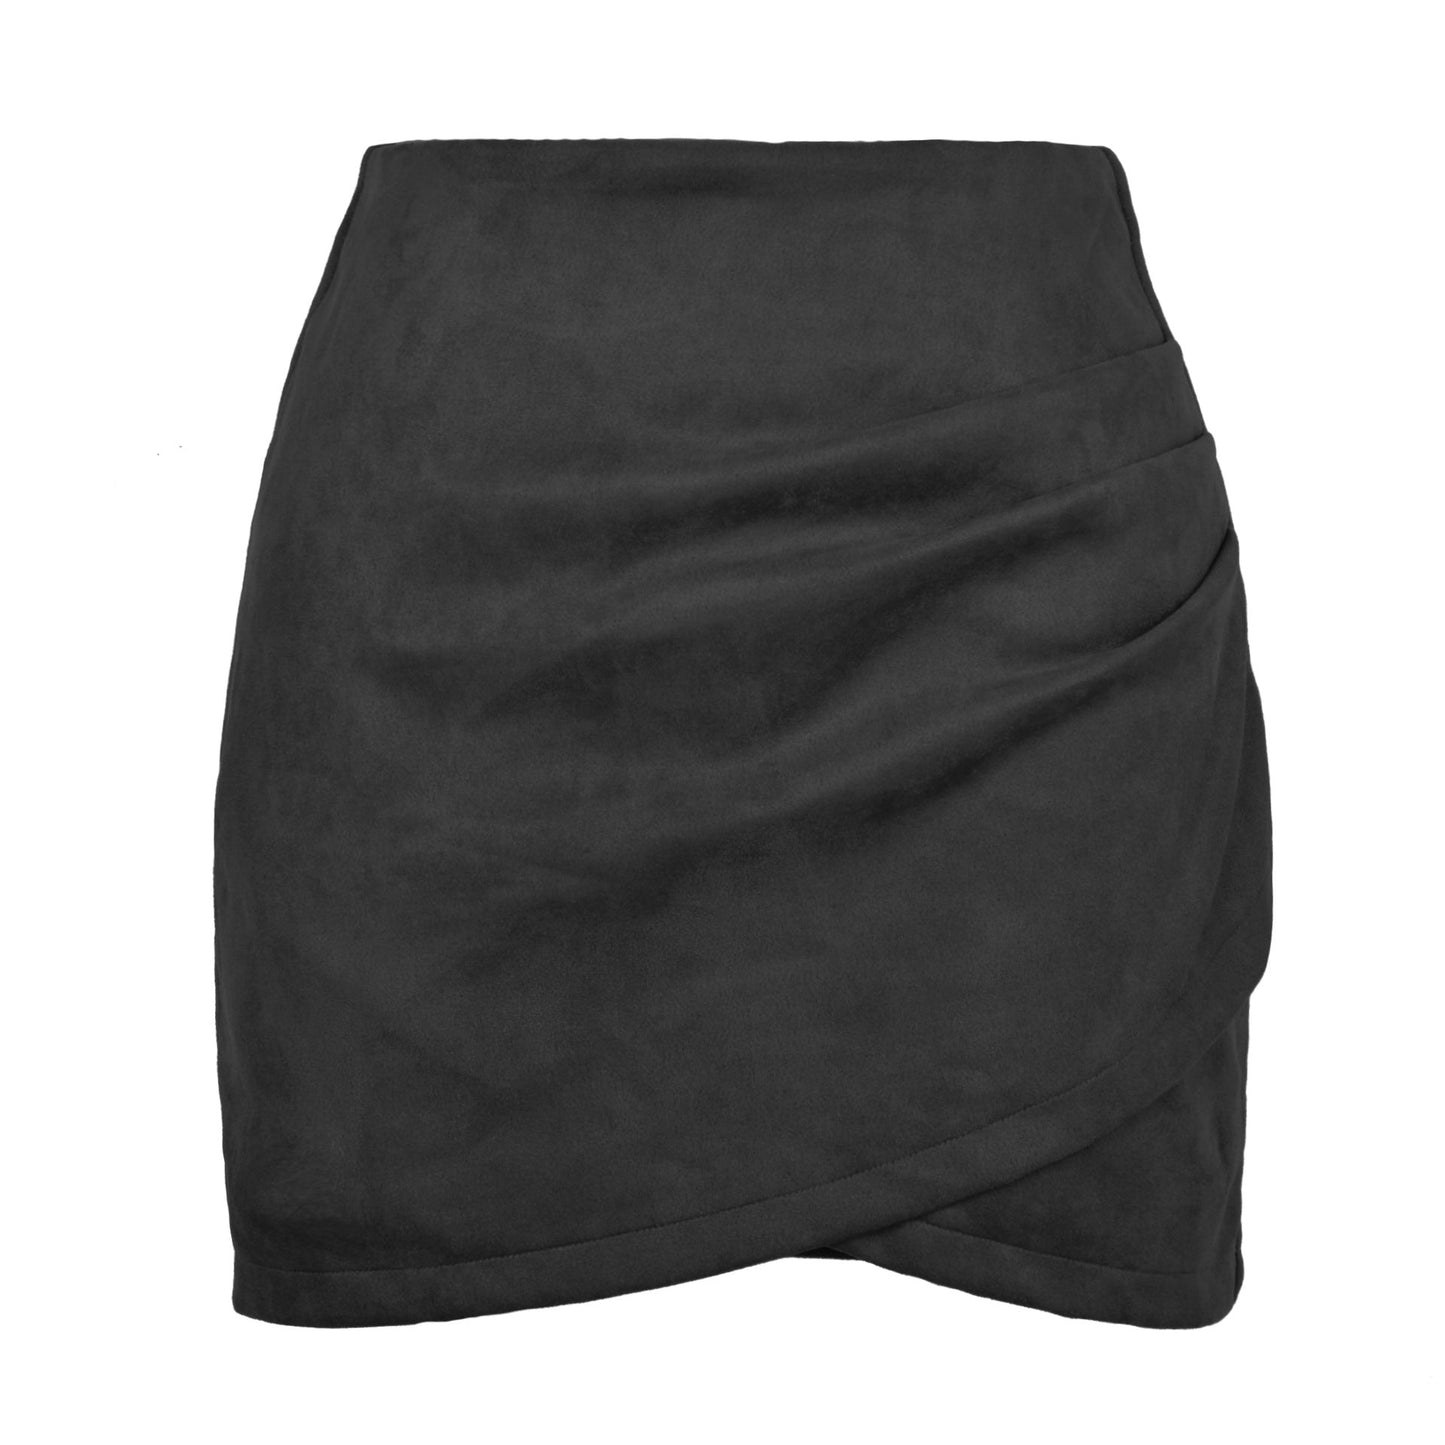 Suede Solid Skirt Autumn Winter Heap Pleated Criss Cross Irregular Asymmetric Zipper Skirt Women Clothing